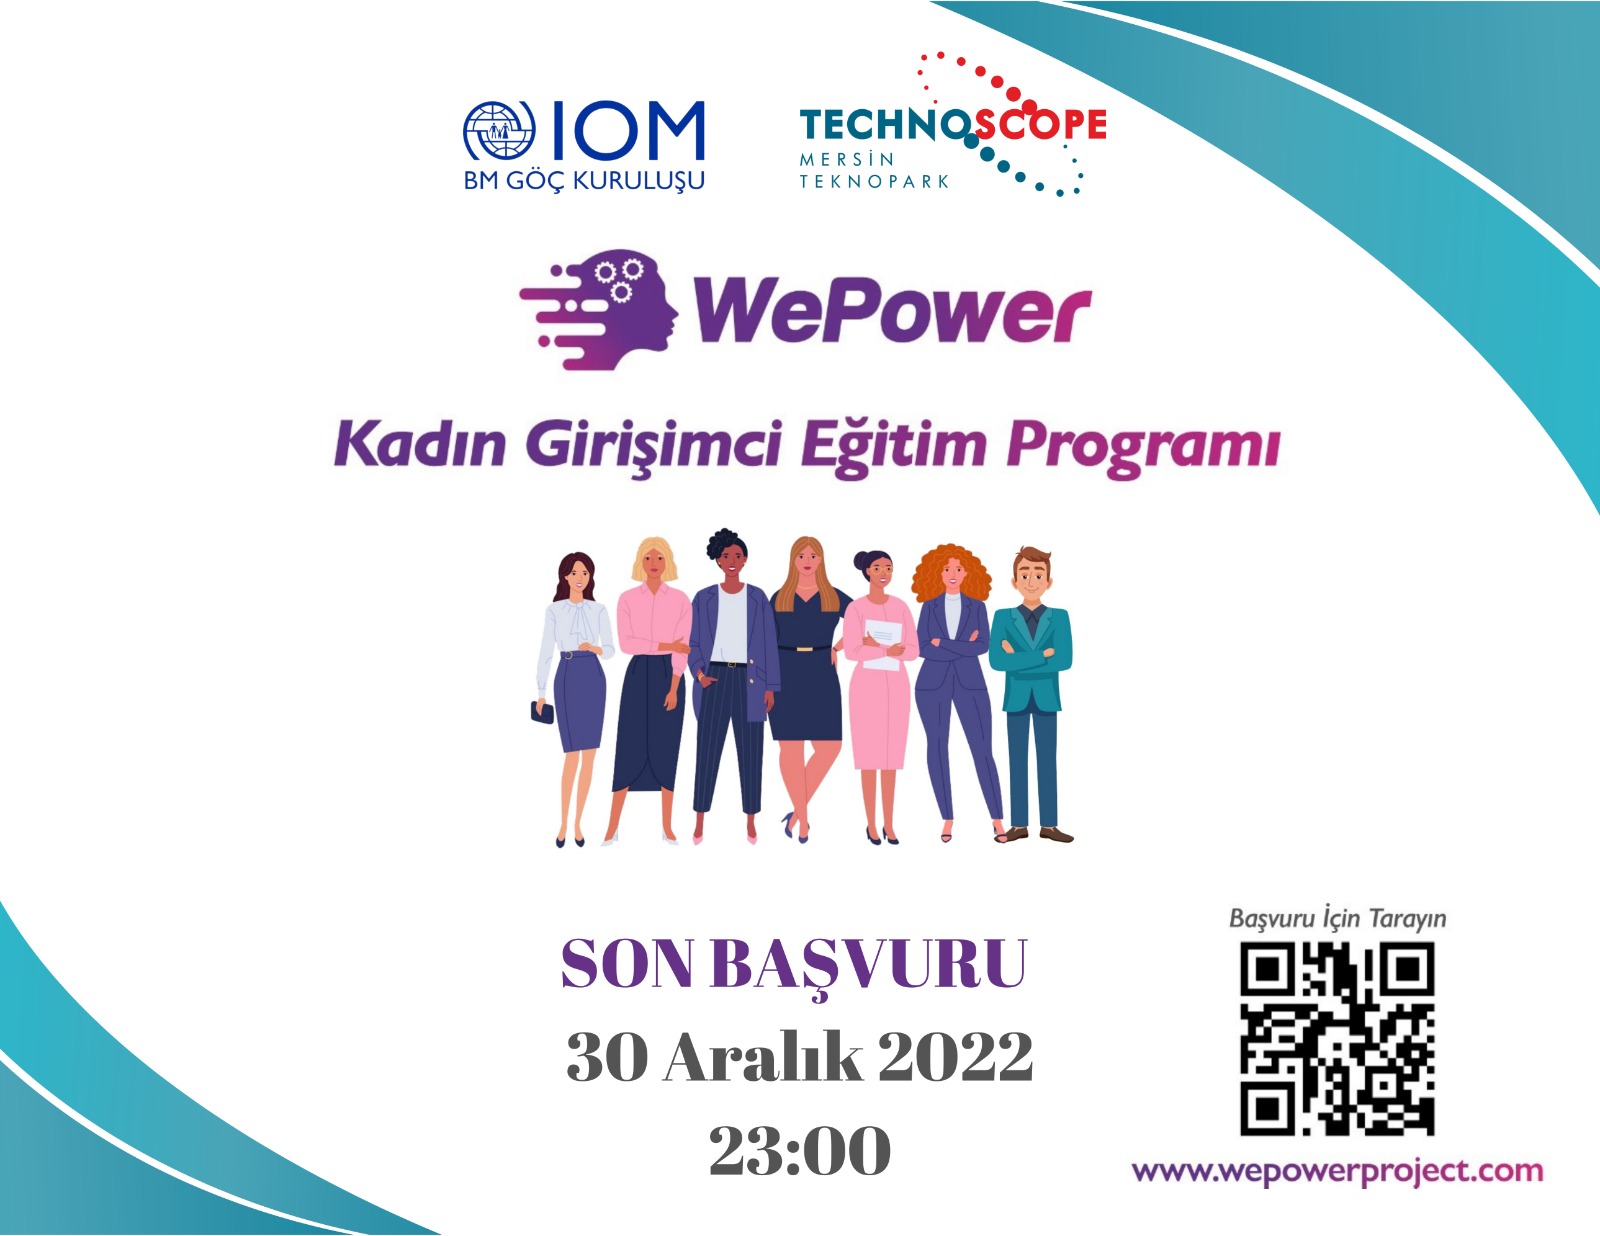 WePower Kadın Girişimci Eğitim Programı’na Başvurular Başladı!